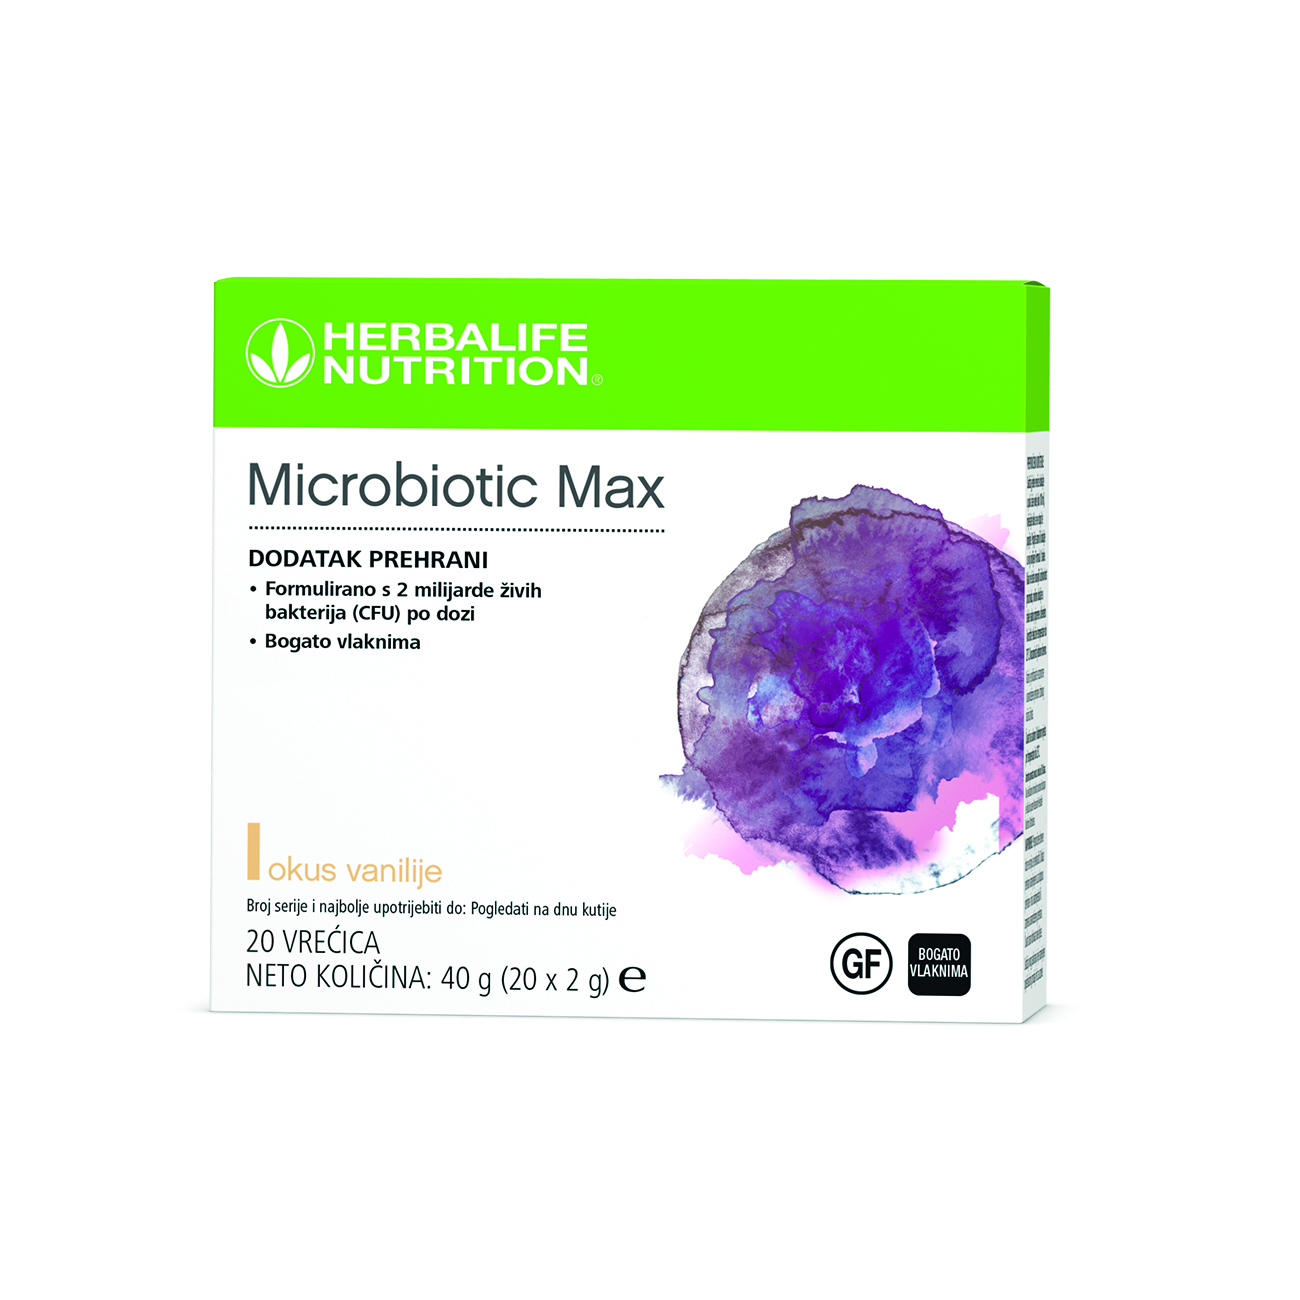 Microbiotic Max, dodatak prehrani u prahu, formuliran kako bi ponudio kombinaciju probiotika i prebiotičkih vlakana. 